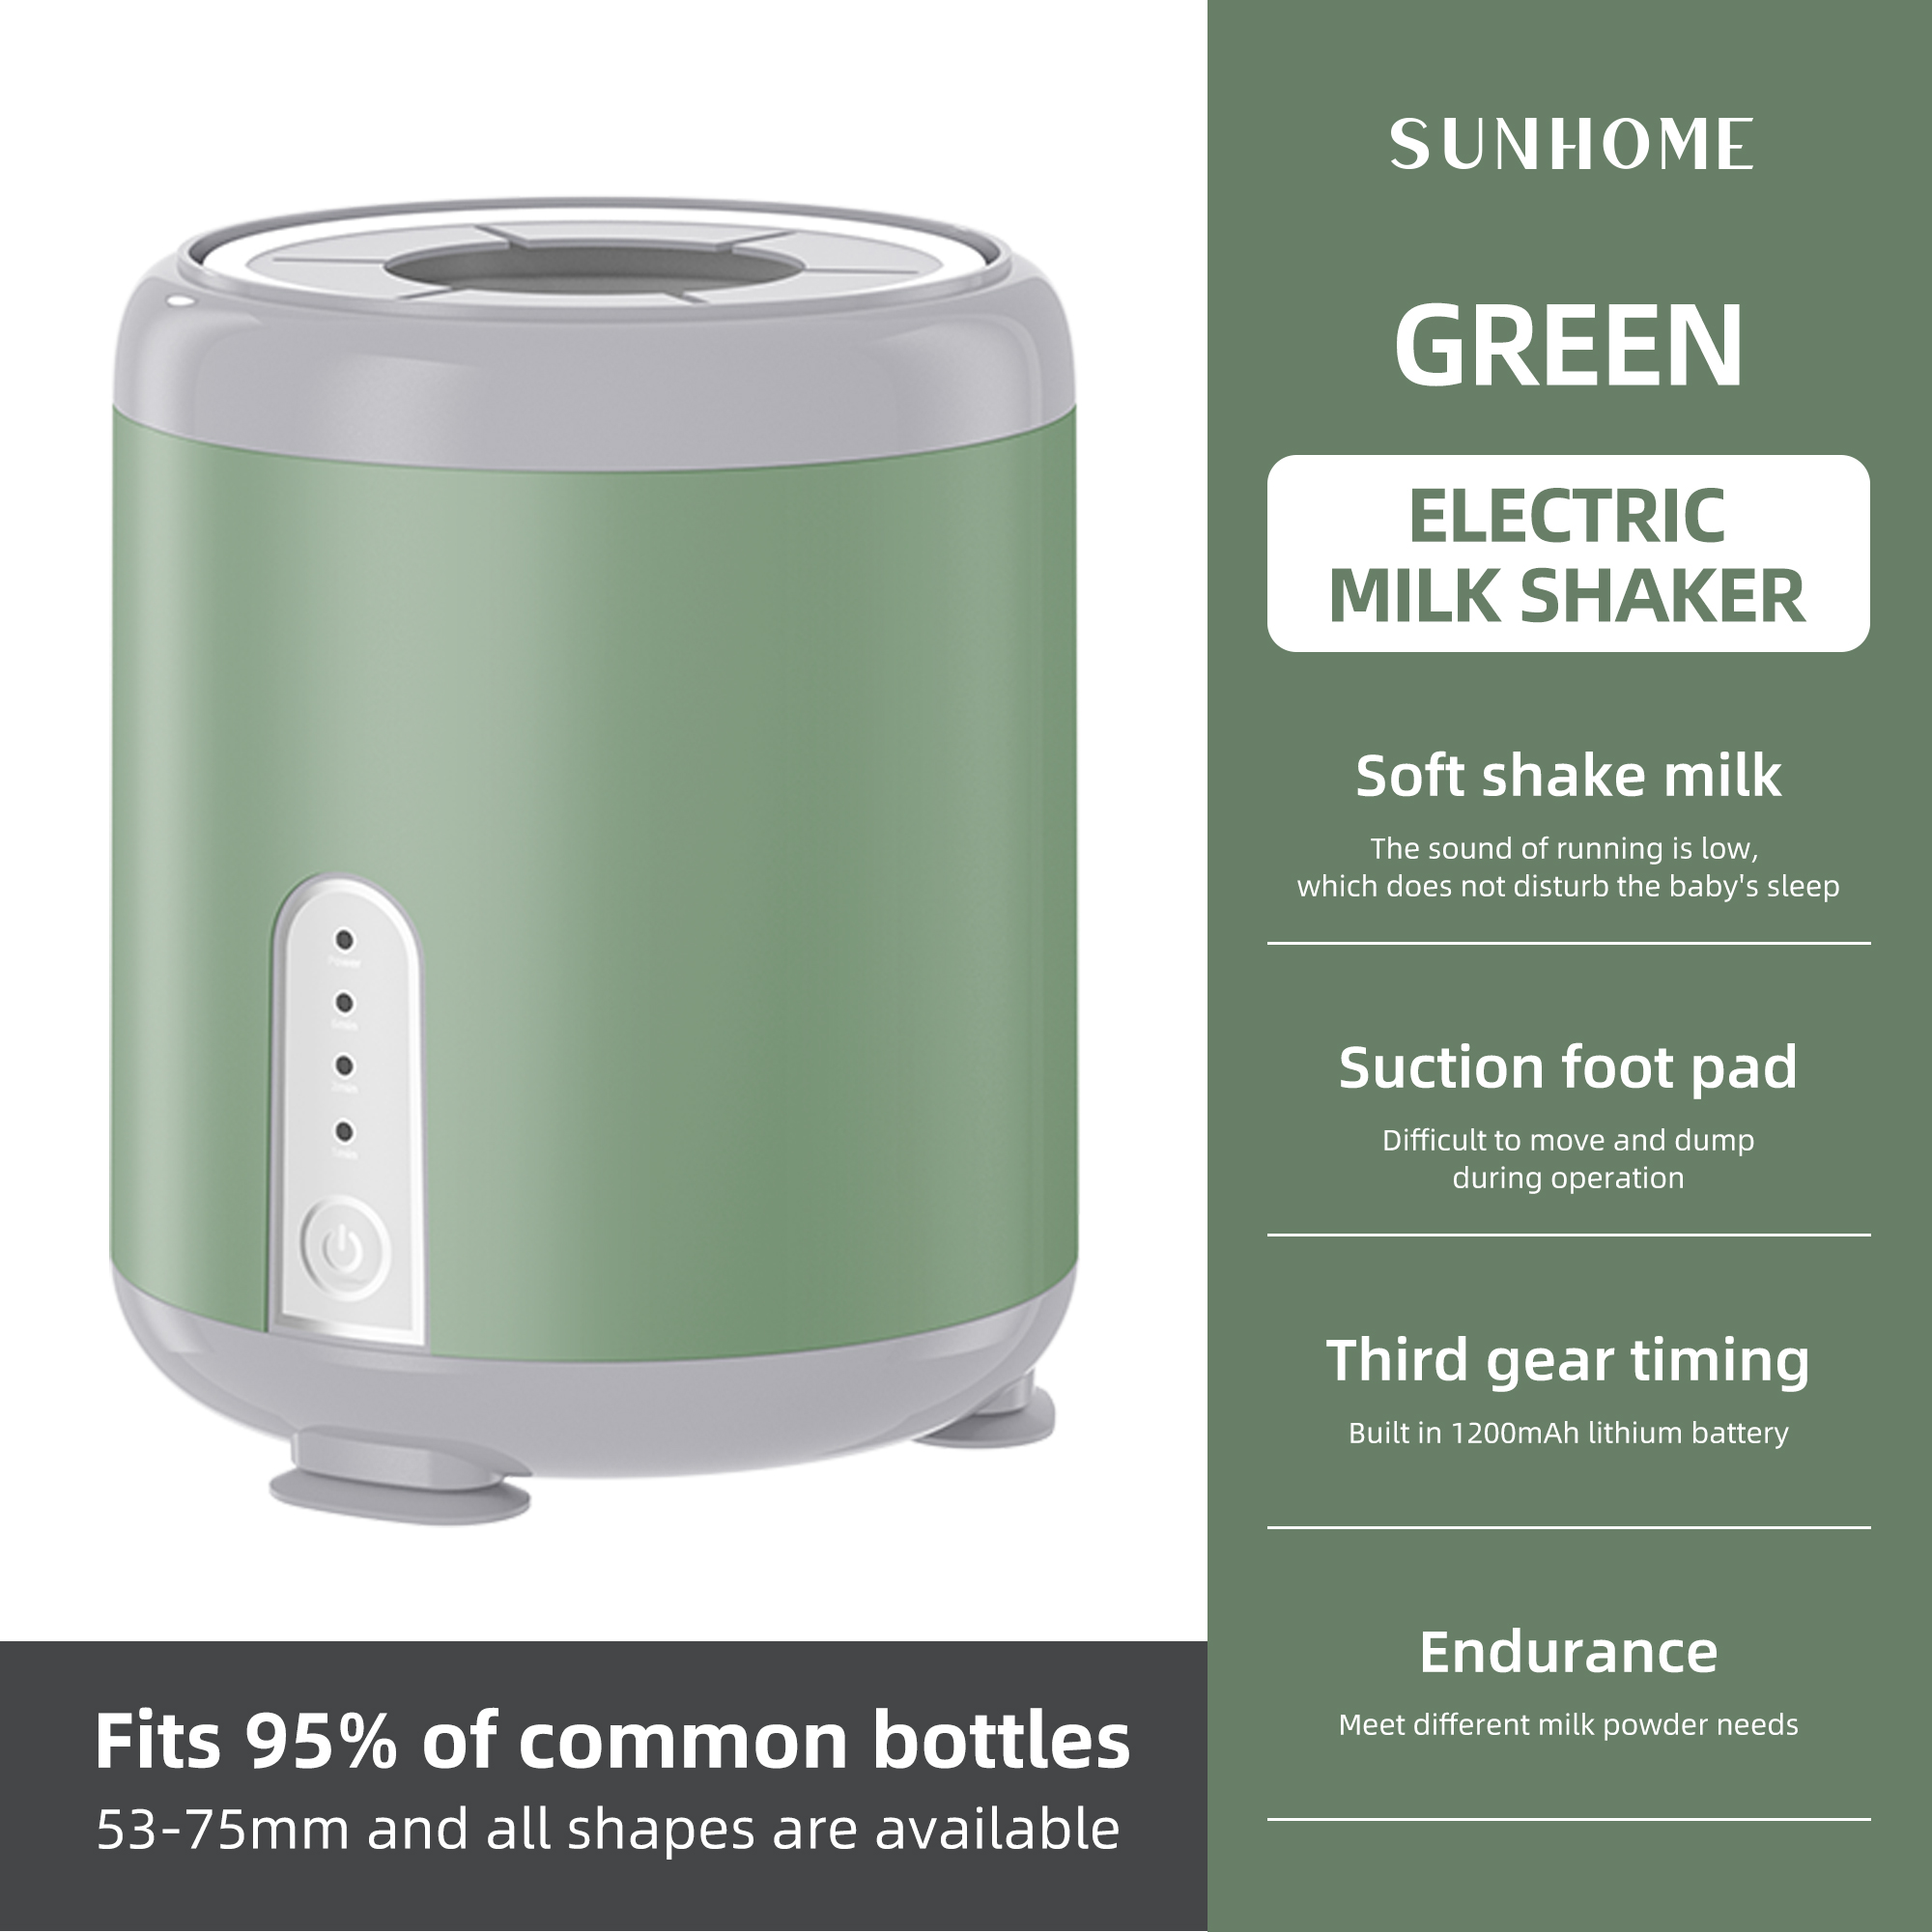 sunhome الأخضر الناقل التسلسلي العام الكهربائية هزاز الحليب